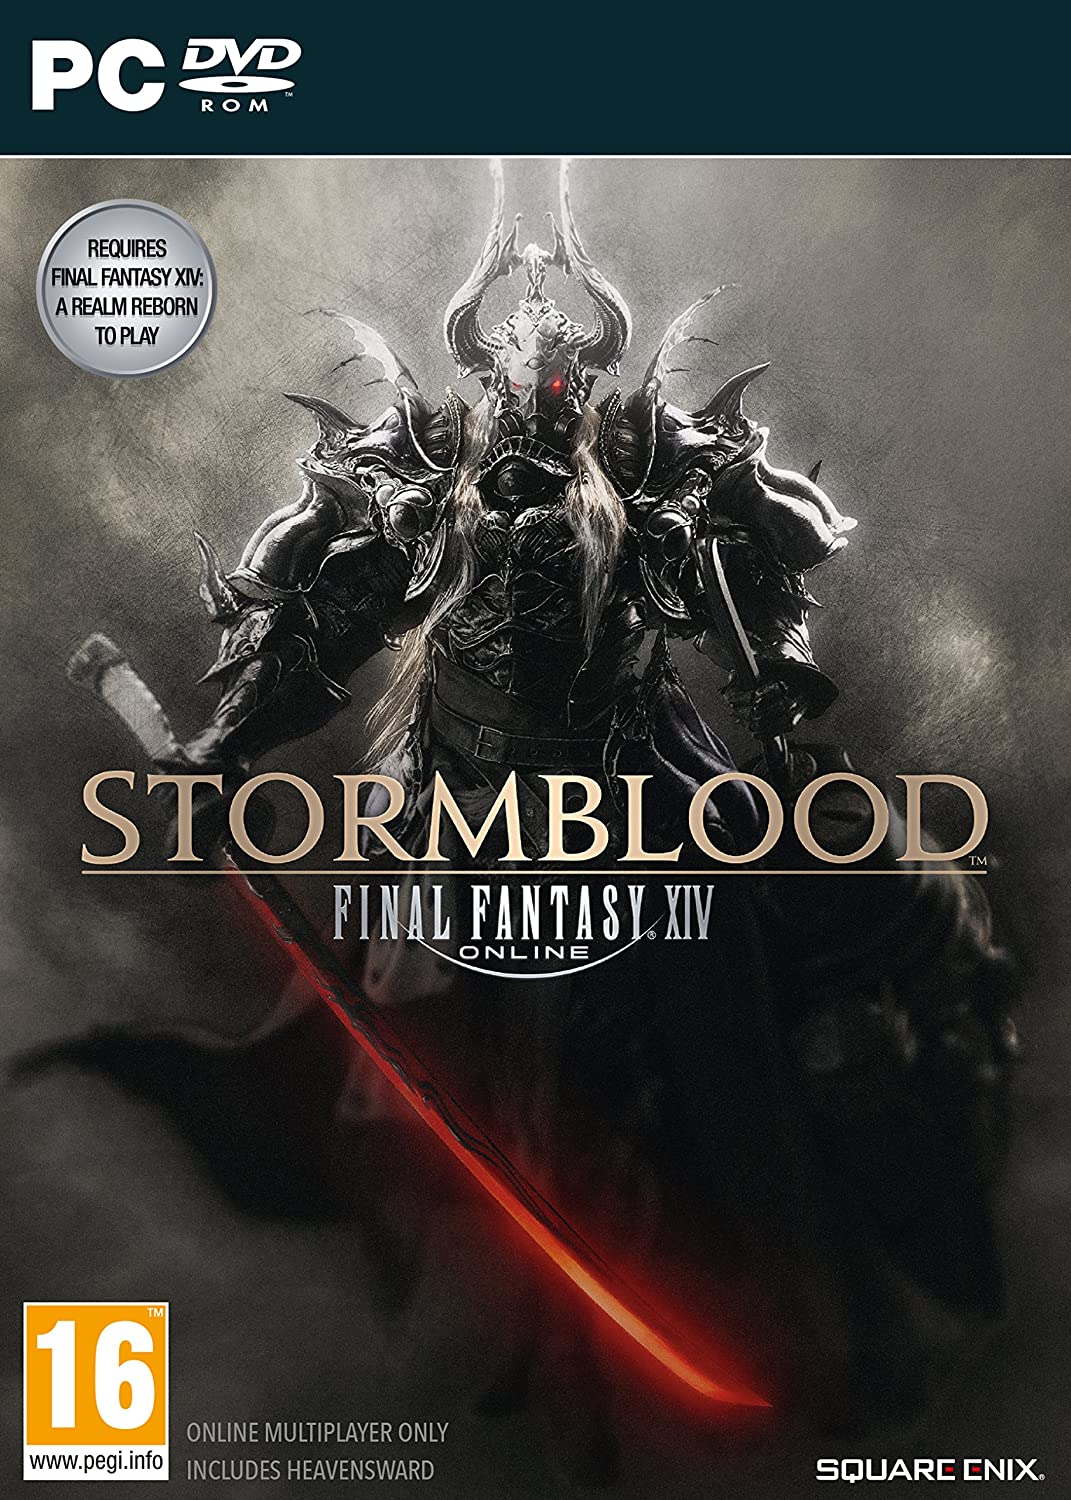 Final Fantasy XIV: Stormblood (PC-DVD)